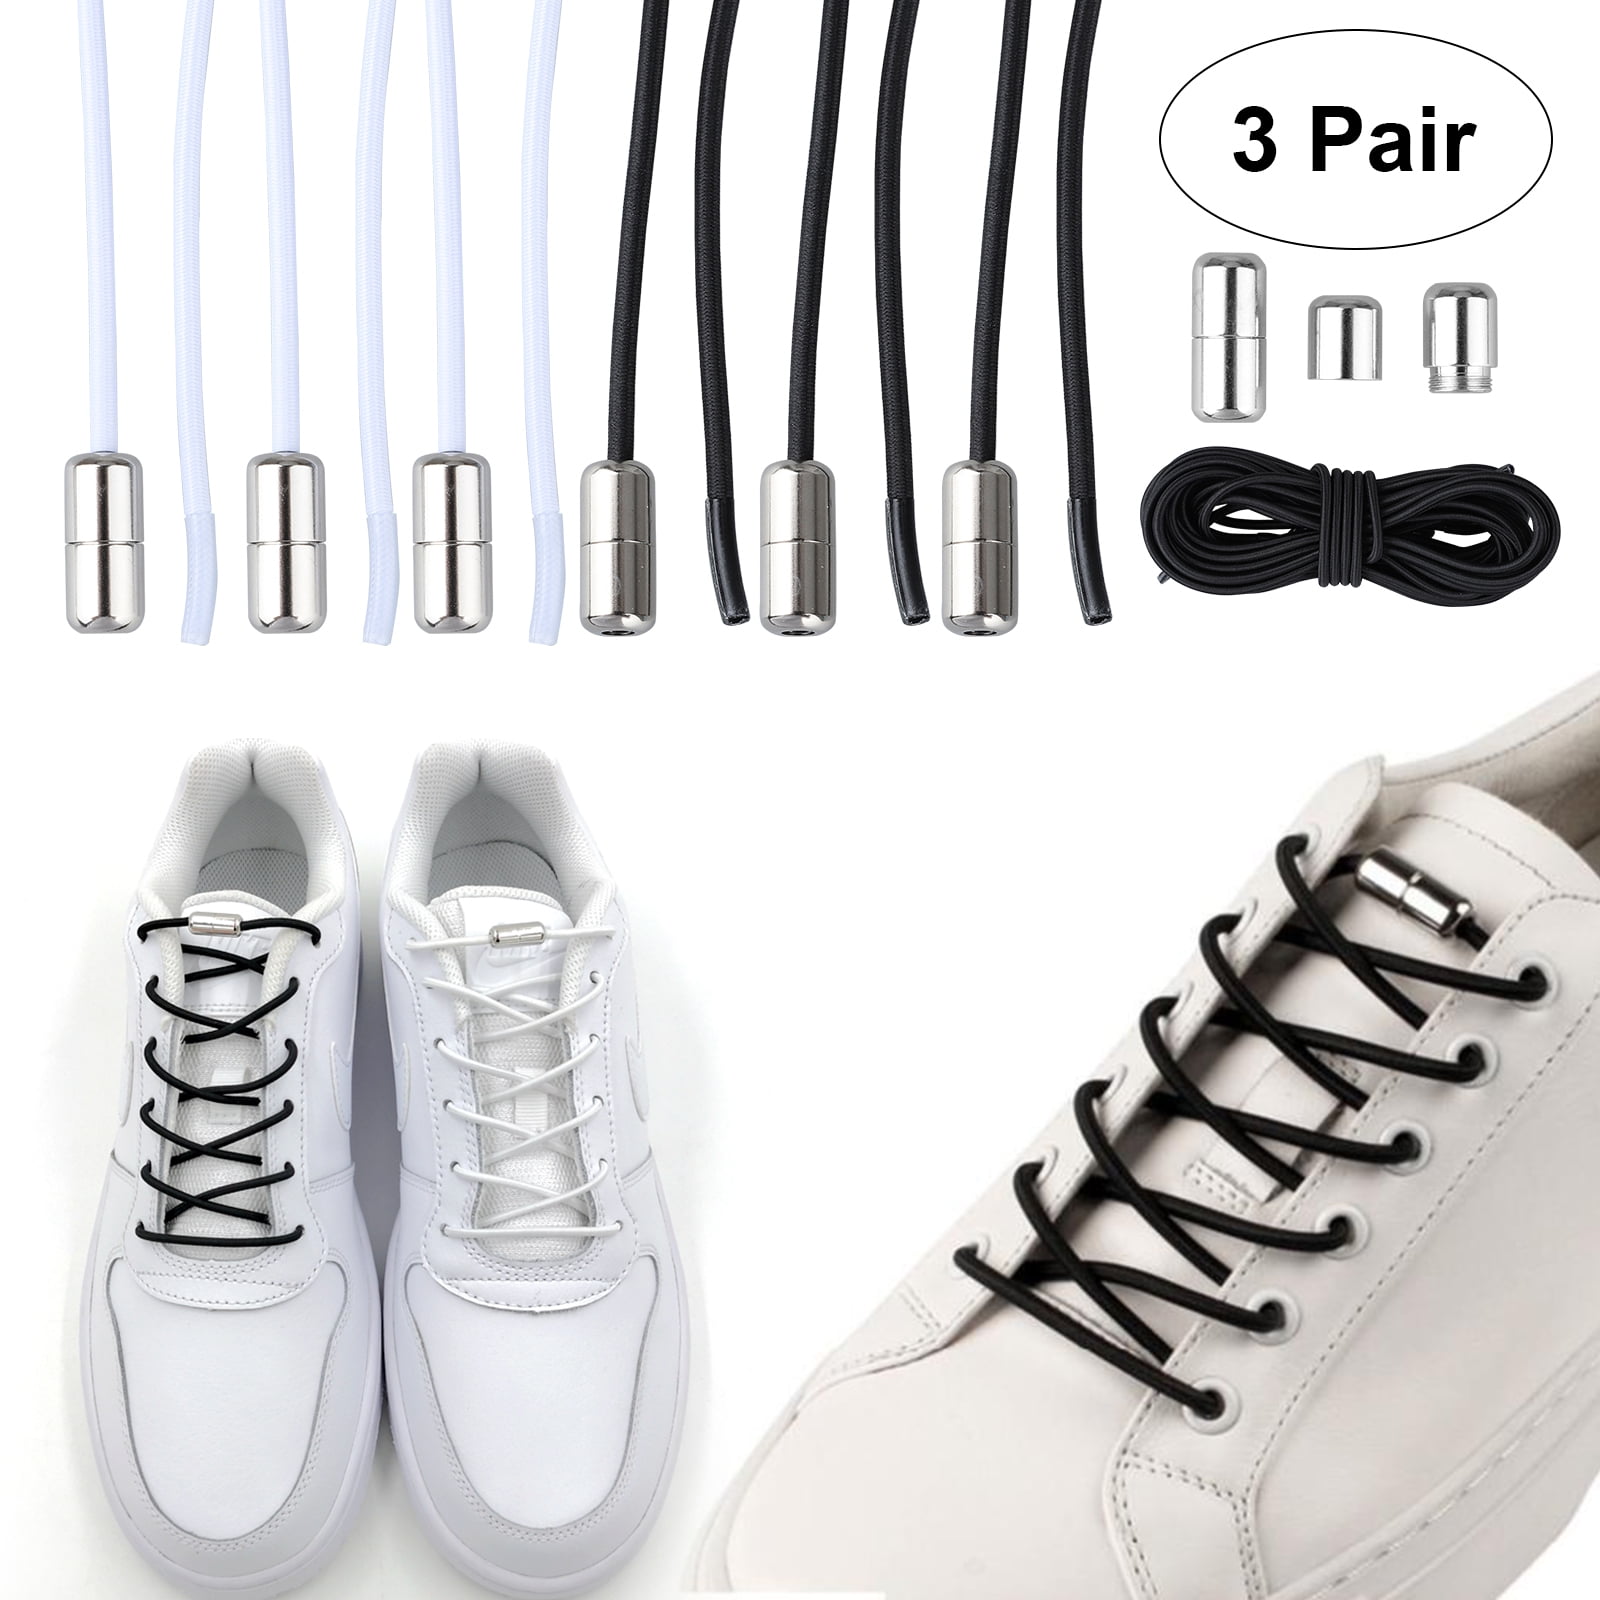 TSV No-Tie Elastic Shoelaces Tie-less 